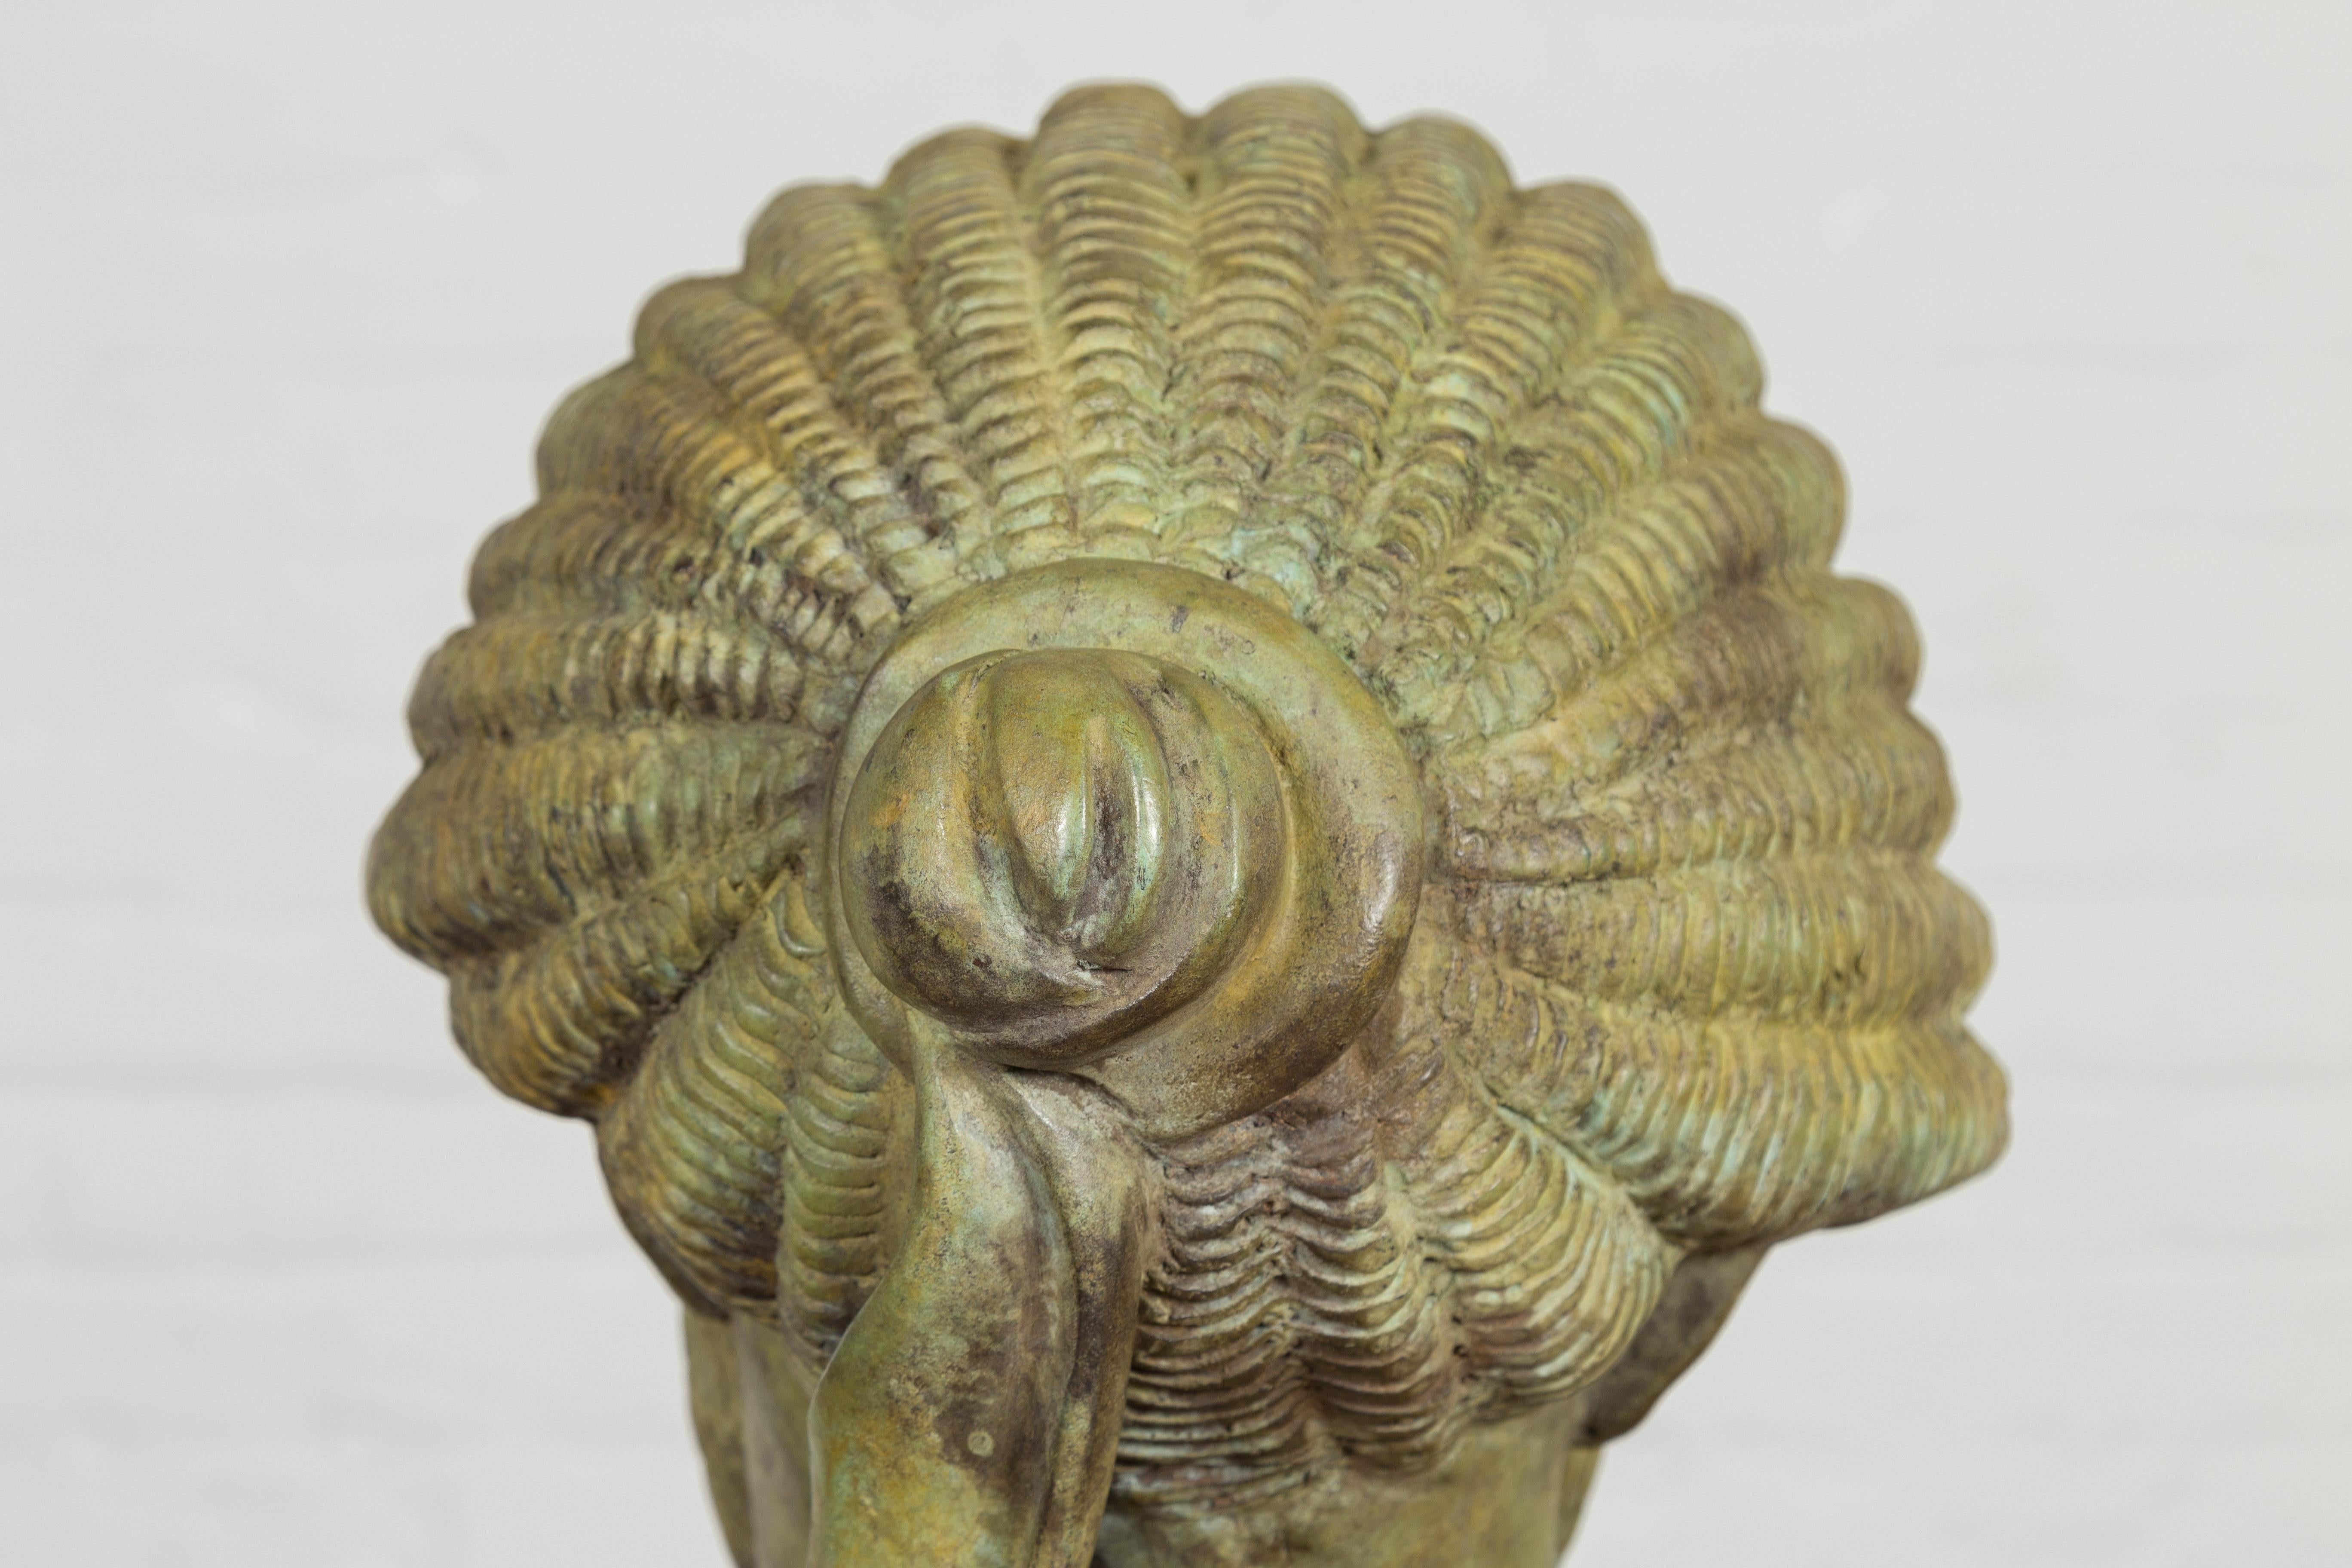 Hermes, Greek God Bronze Sculpture with Verde Patina on Custom Base 11